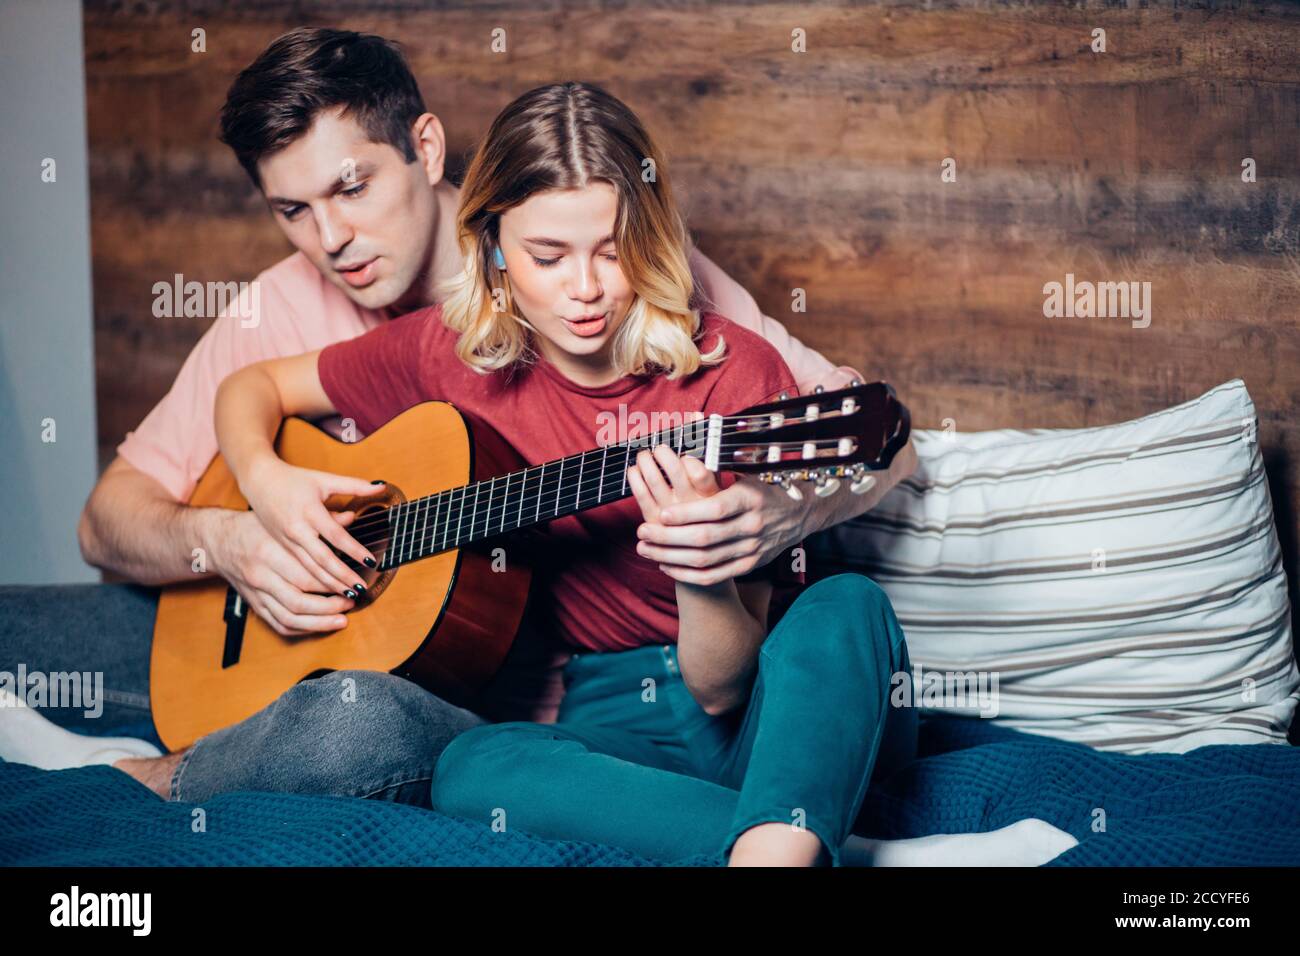 https://c8.alamy.com/compes/2ccyfe6/una-pareja-caucasica-encantadora-toca-la-guitarra-sentado-en-la-cama-un-joven-ensenando-a-su-novia-a-tocar-la-guitarra-2ccyfe6.jpg